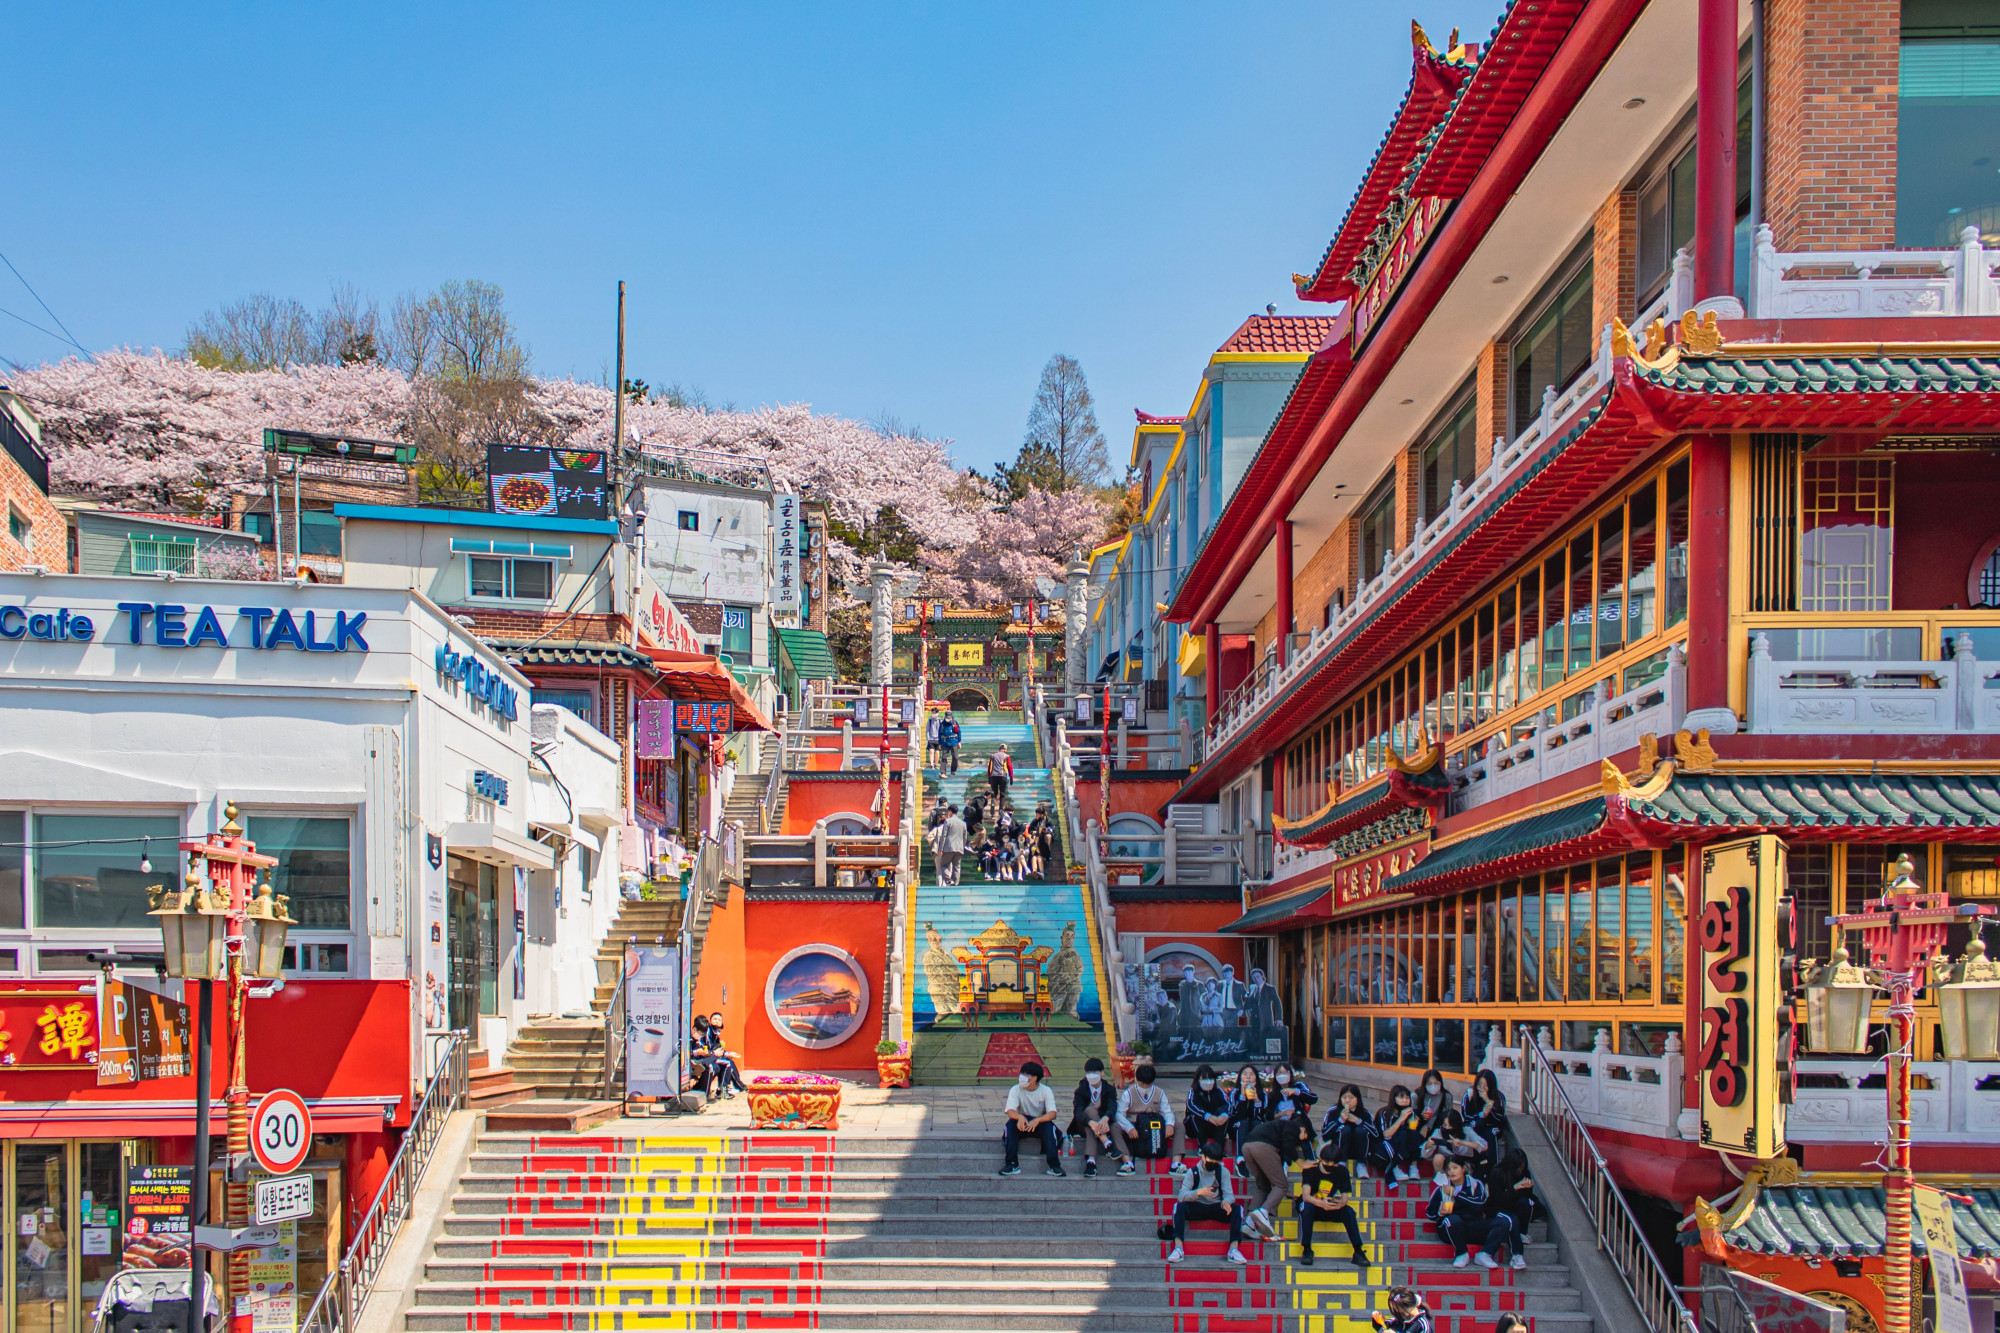 Các địa điểm tham quan nên ghé khi đến Incheon: China Town ở Incheon là khu phố người Hoa nổi tiếng nhất Hàn Quốc, xuất hiện từ cuối thế kỉ 19. Đến đây, bạn sẽ có dịp tham quan con đường dài 150m với những bức họa ở hai bên cùng những hàng quán được trang trí bắt mắt là điểm thu hút khách du lịch đến với khu phố này. Các món nên thử tại China Town gồm sủi cảo, xiên que, mì tương đen phong các Hàn-Trung. 